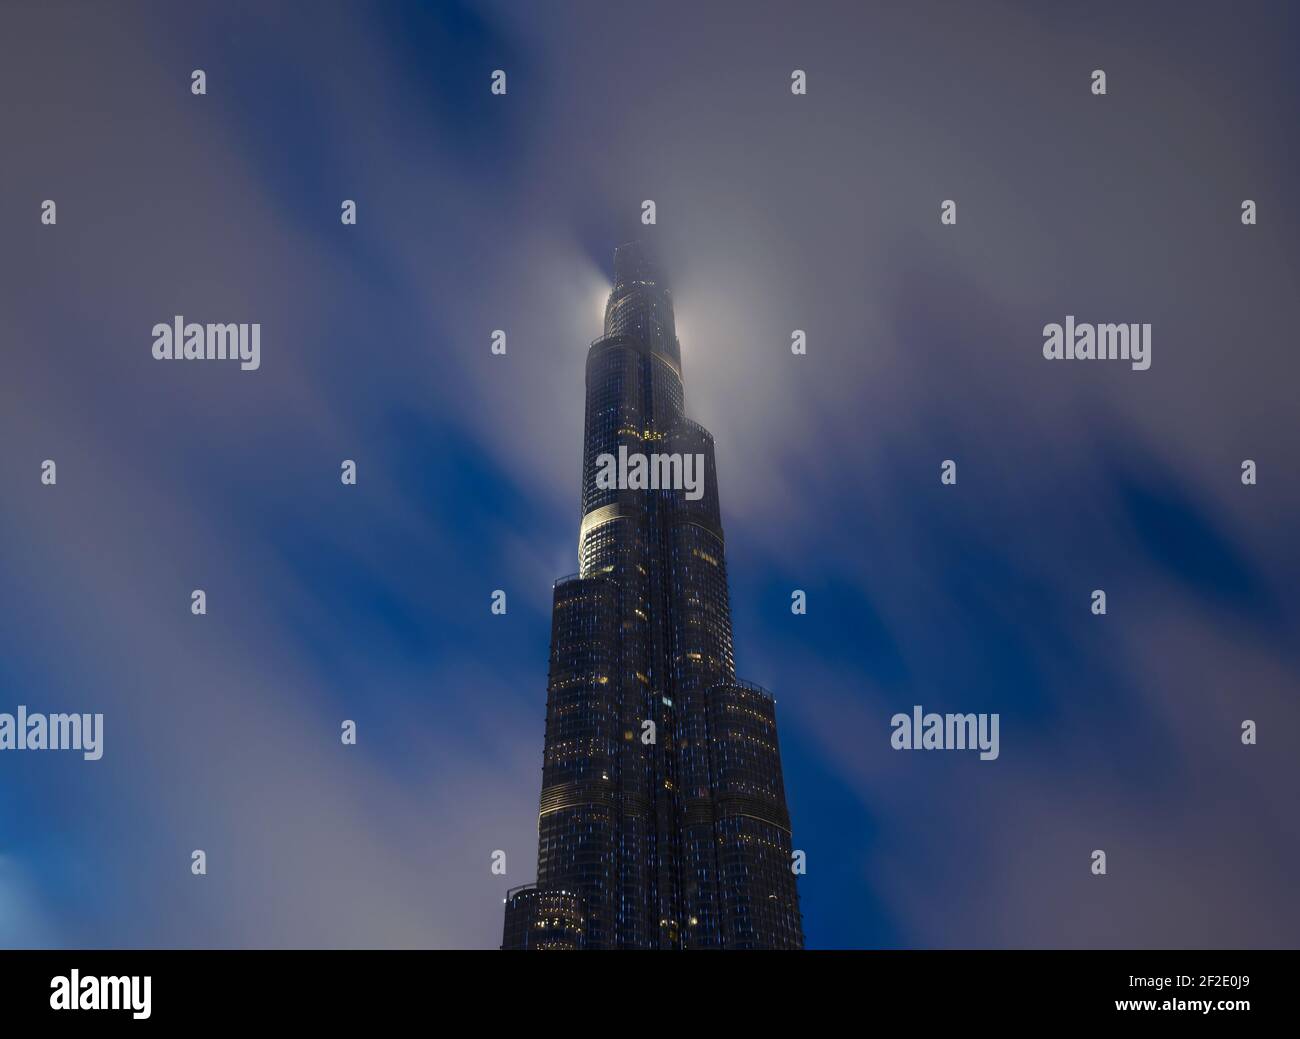 Burj Khalifa di notte con la cima coperta da nuvole basse. Grattacielo a Dubai, Emirati Arabi Uniti. In alto dietro il cloud. Foto Stock